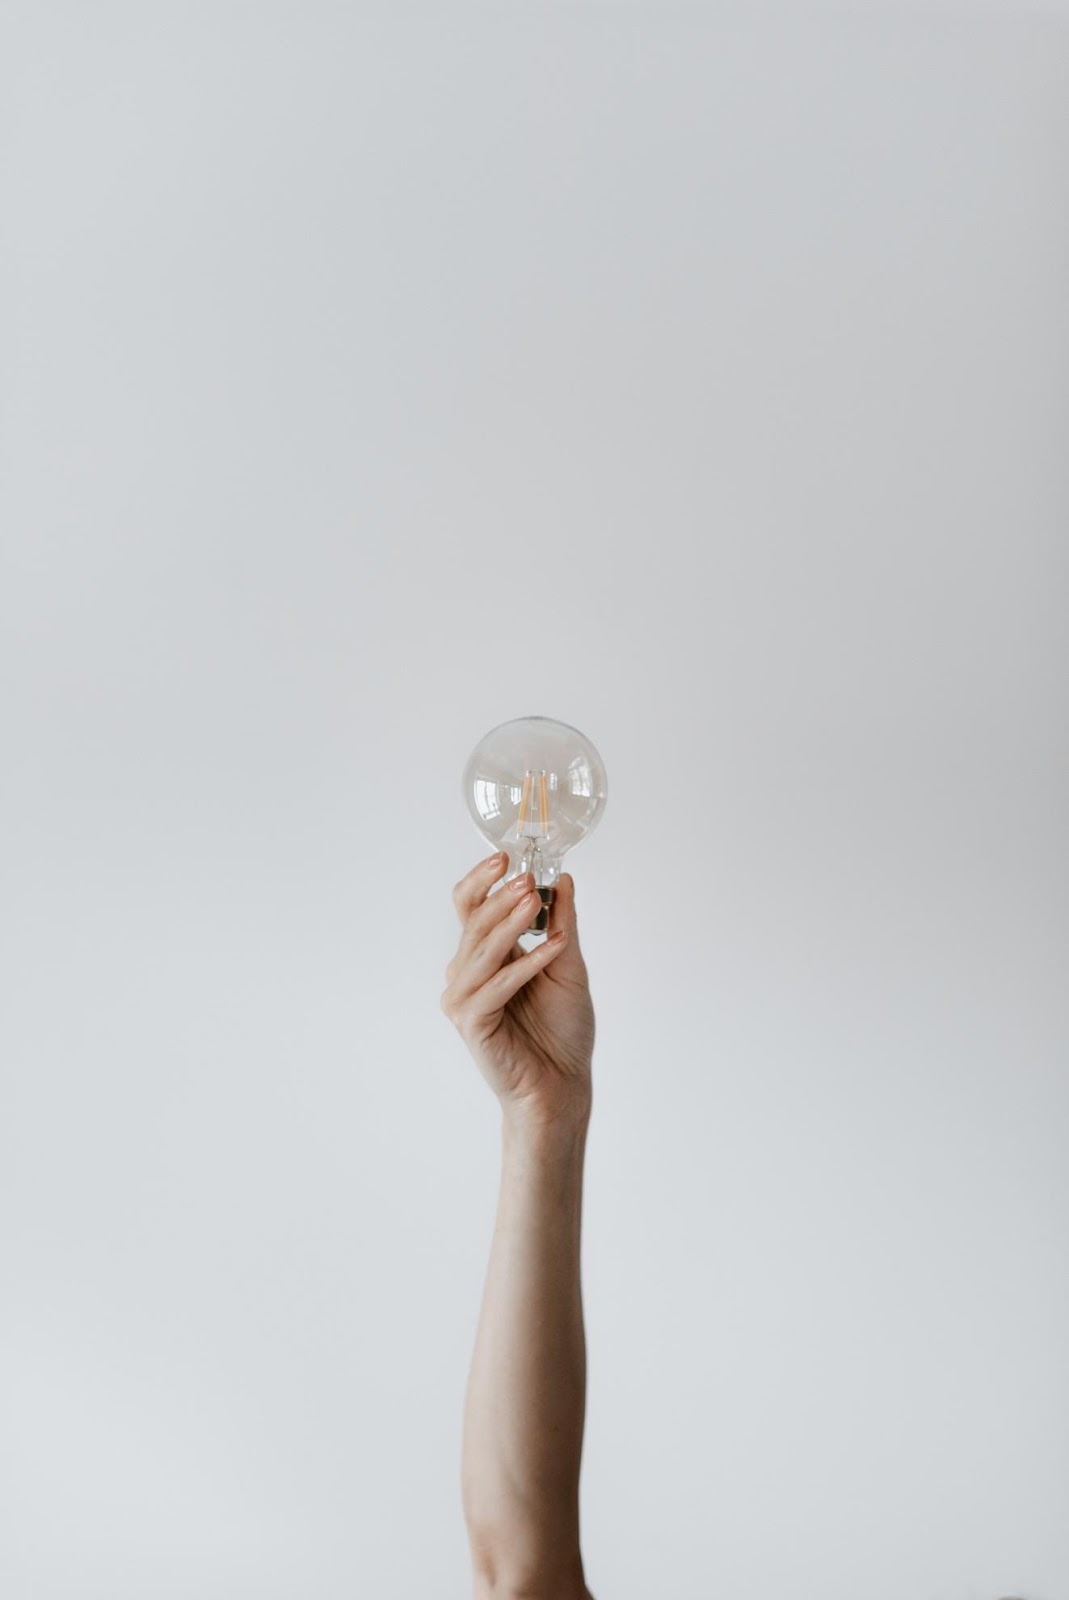 A Light Bulb